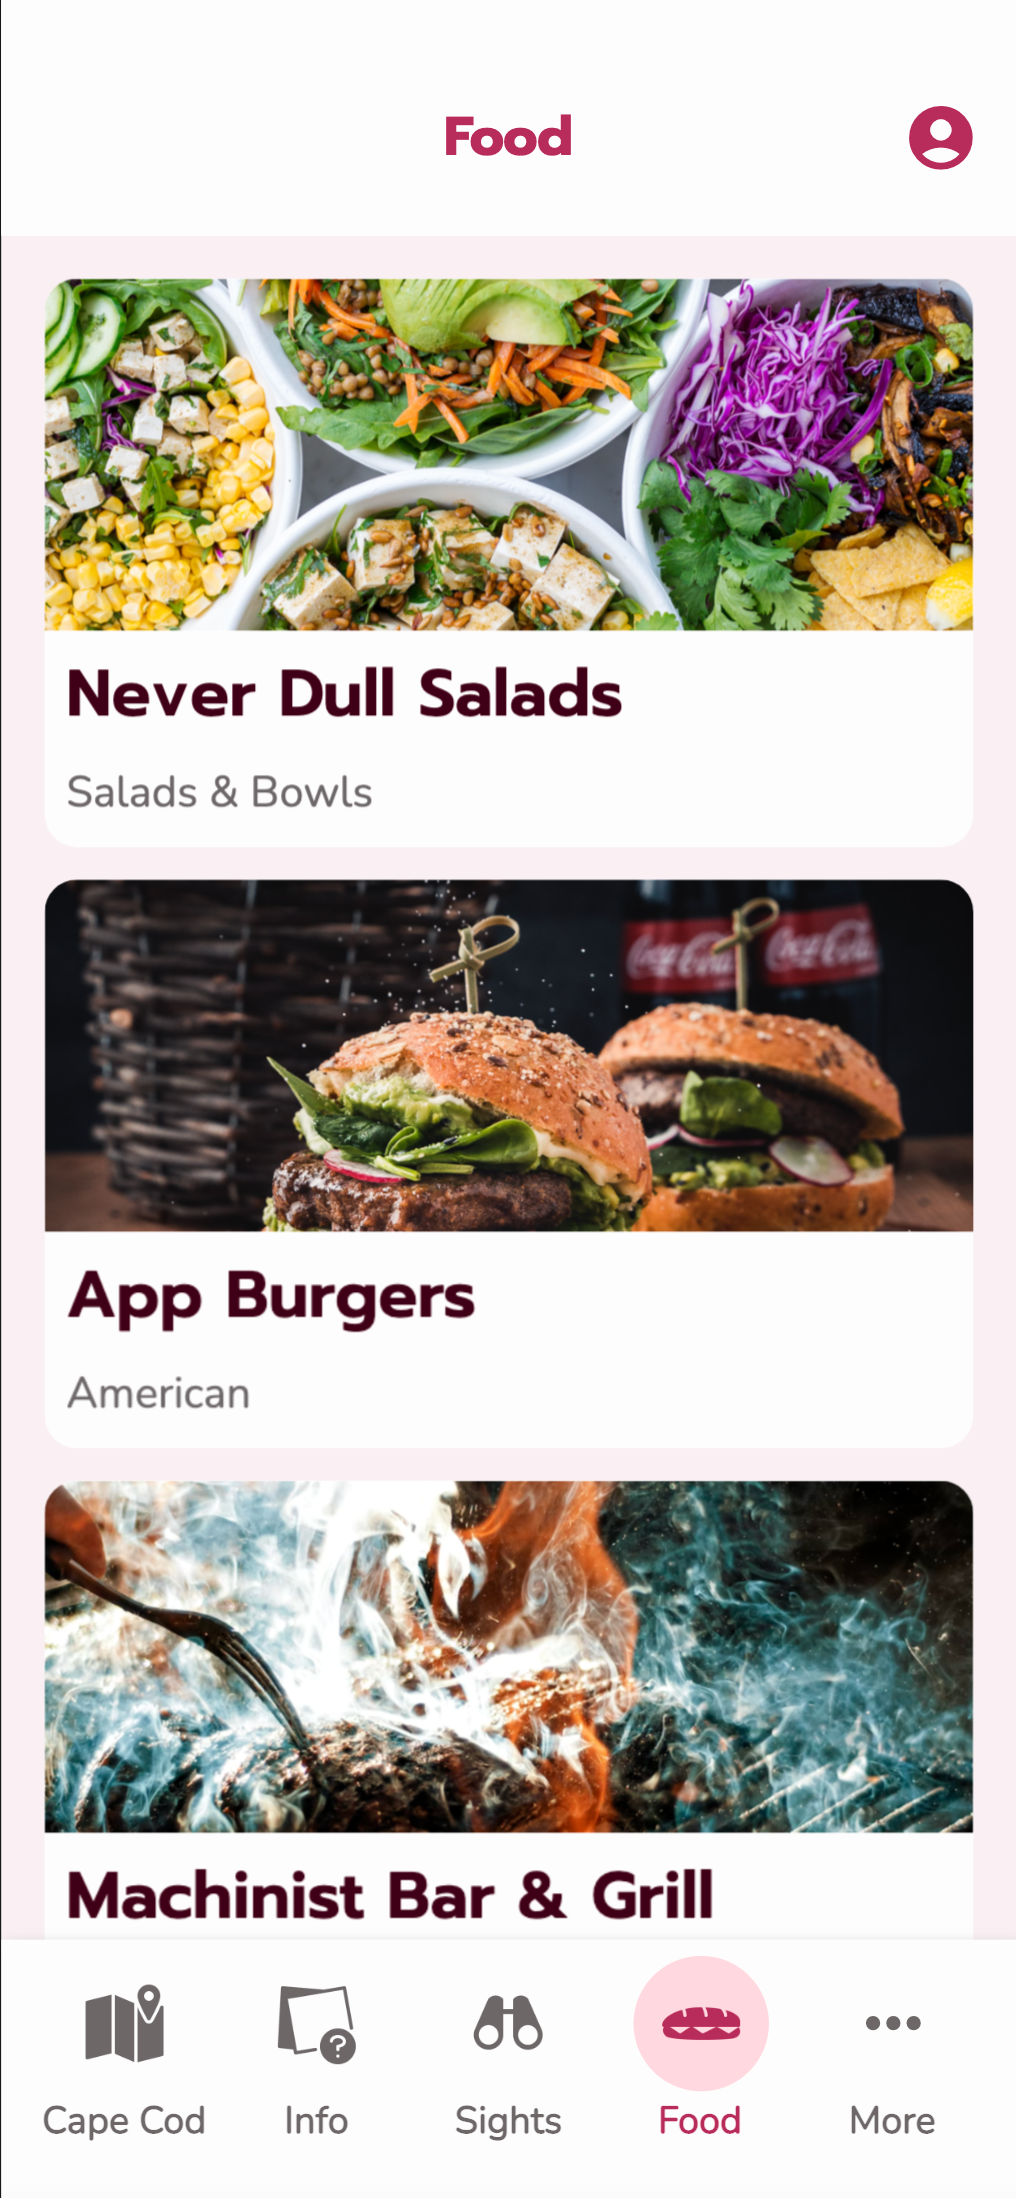 Tourism App - Food Menu